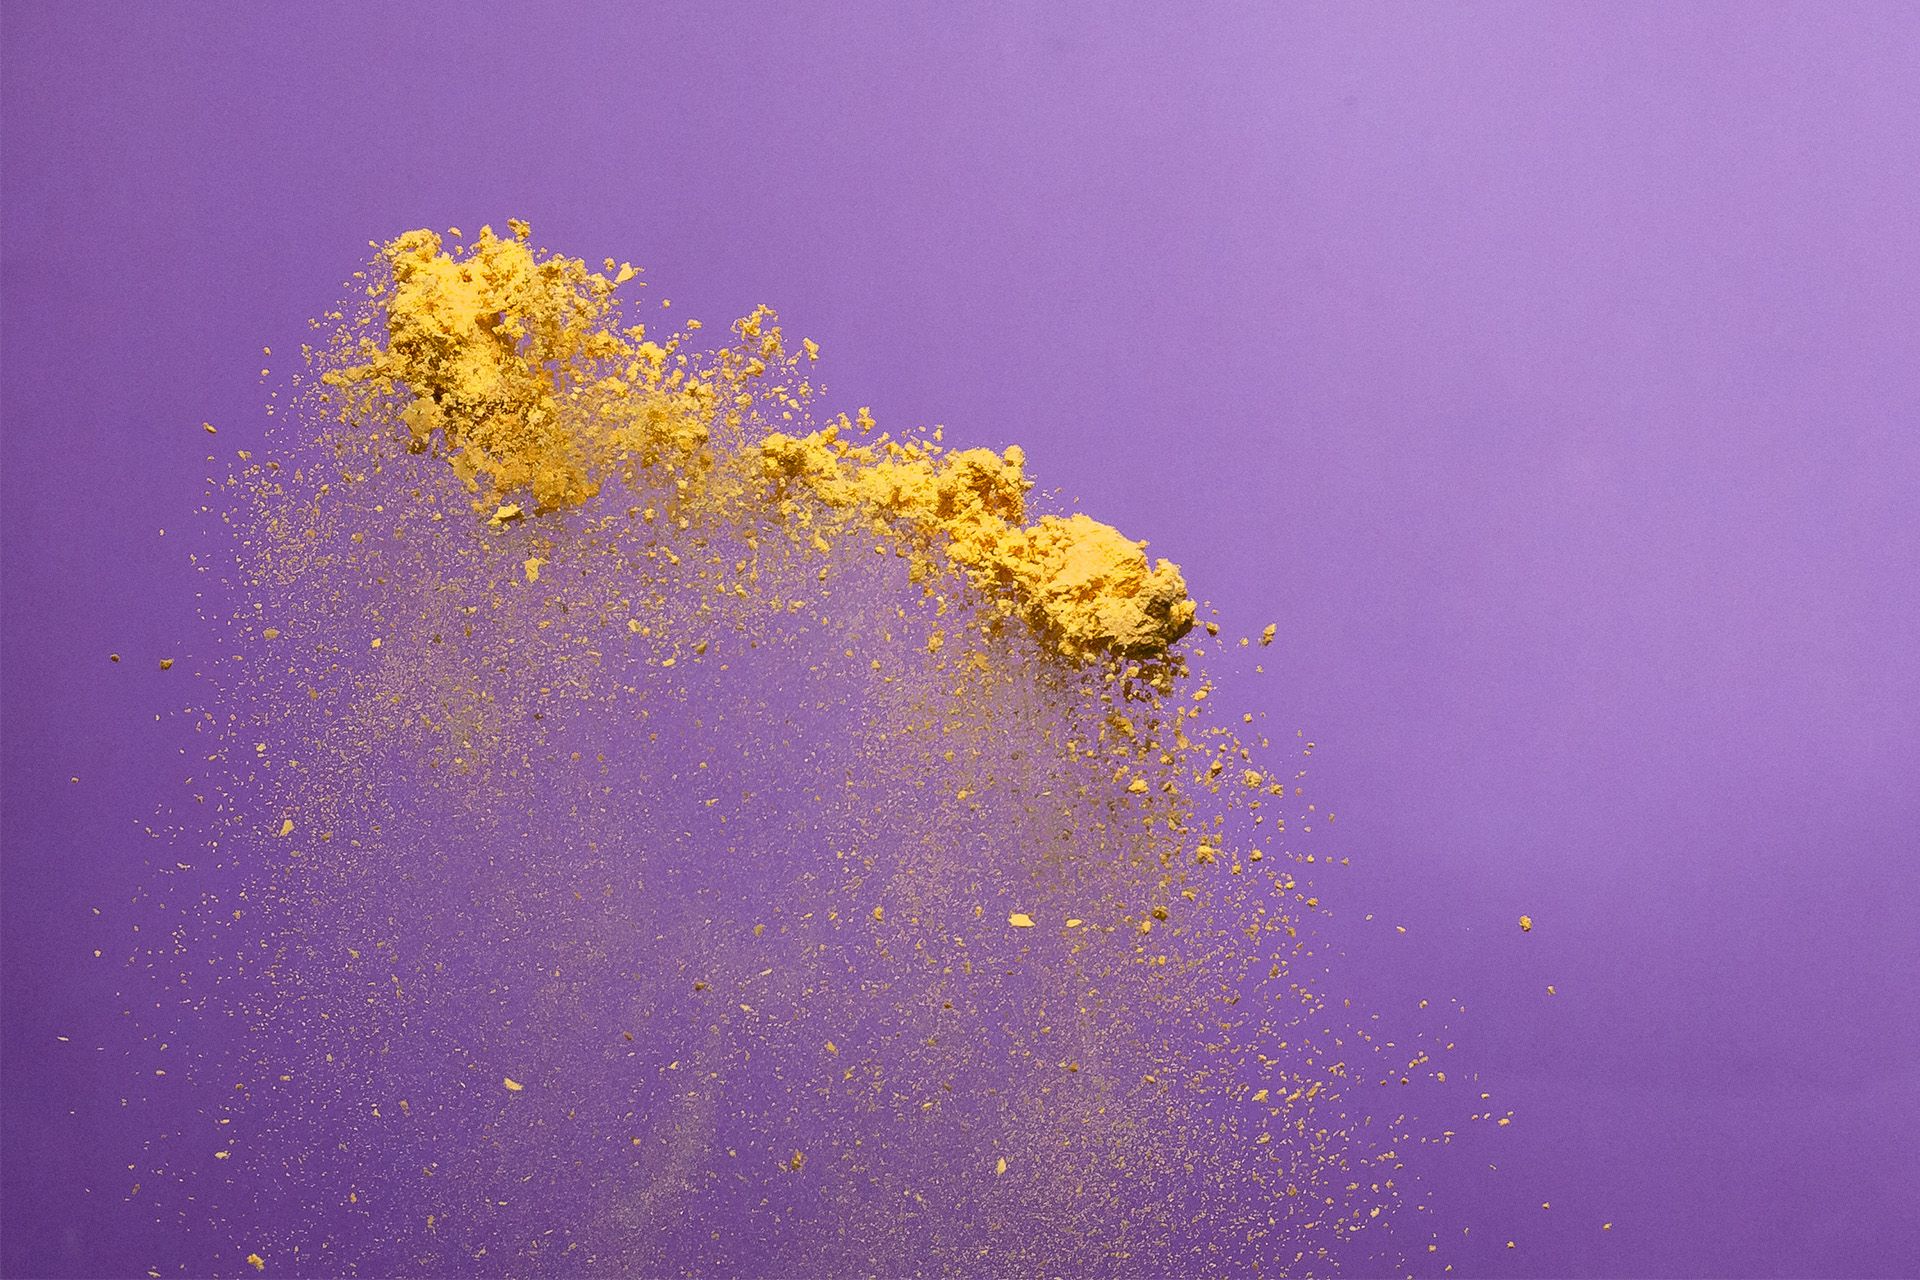 El polvo Solein sobre una superficie lila.